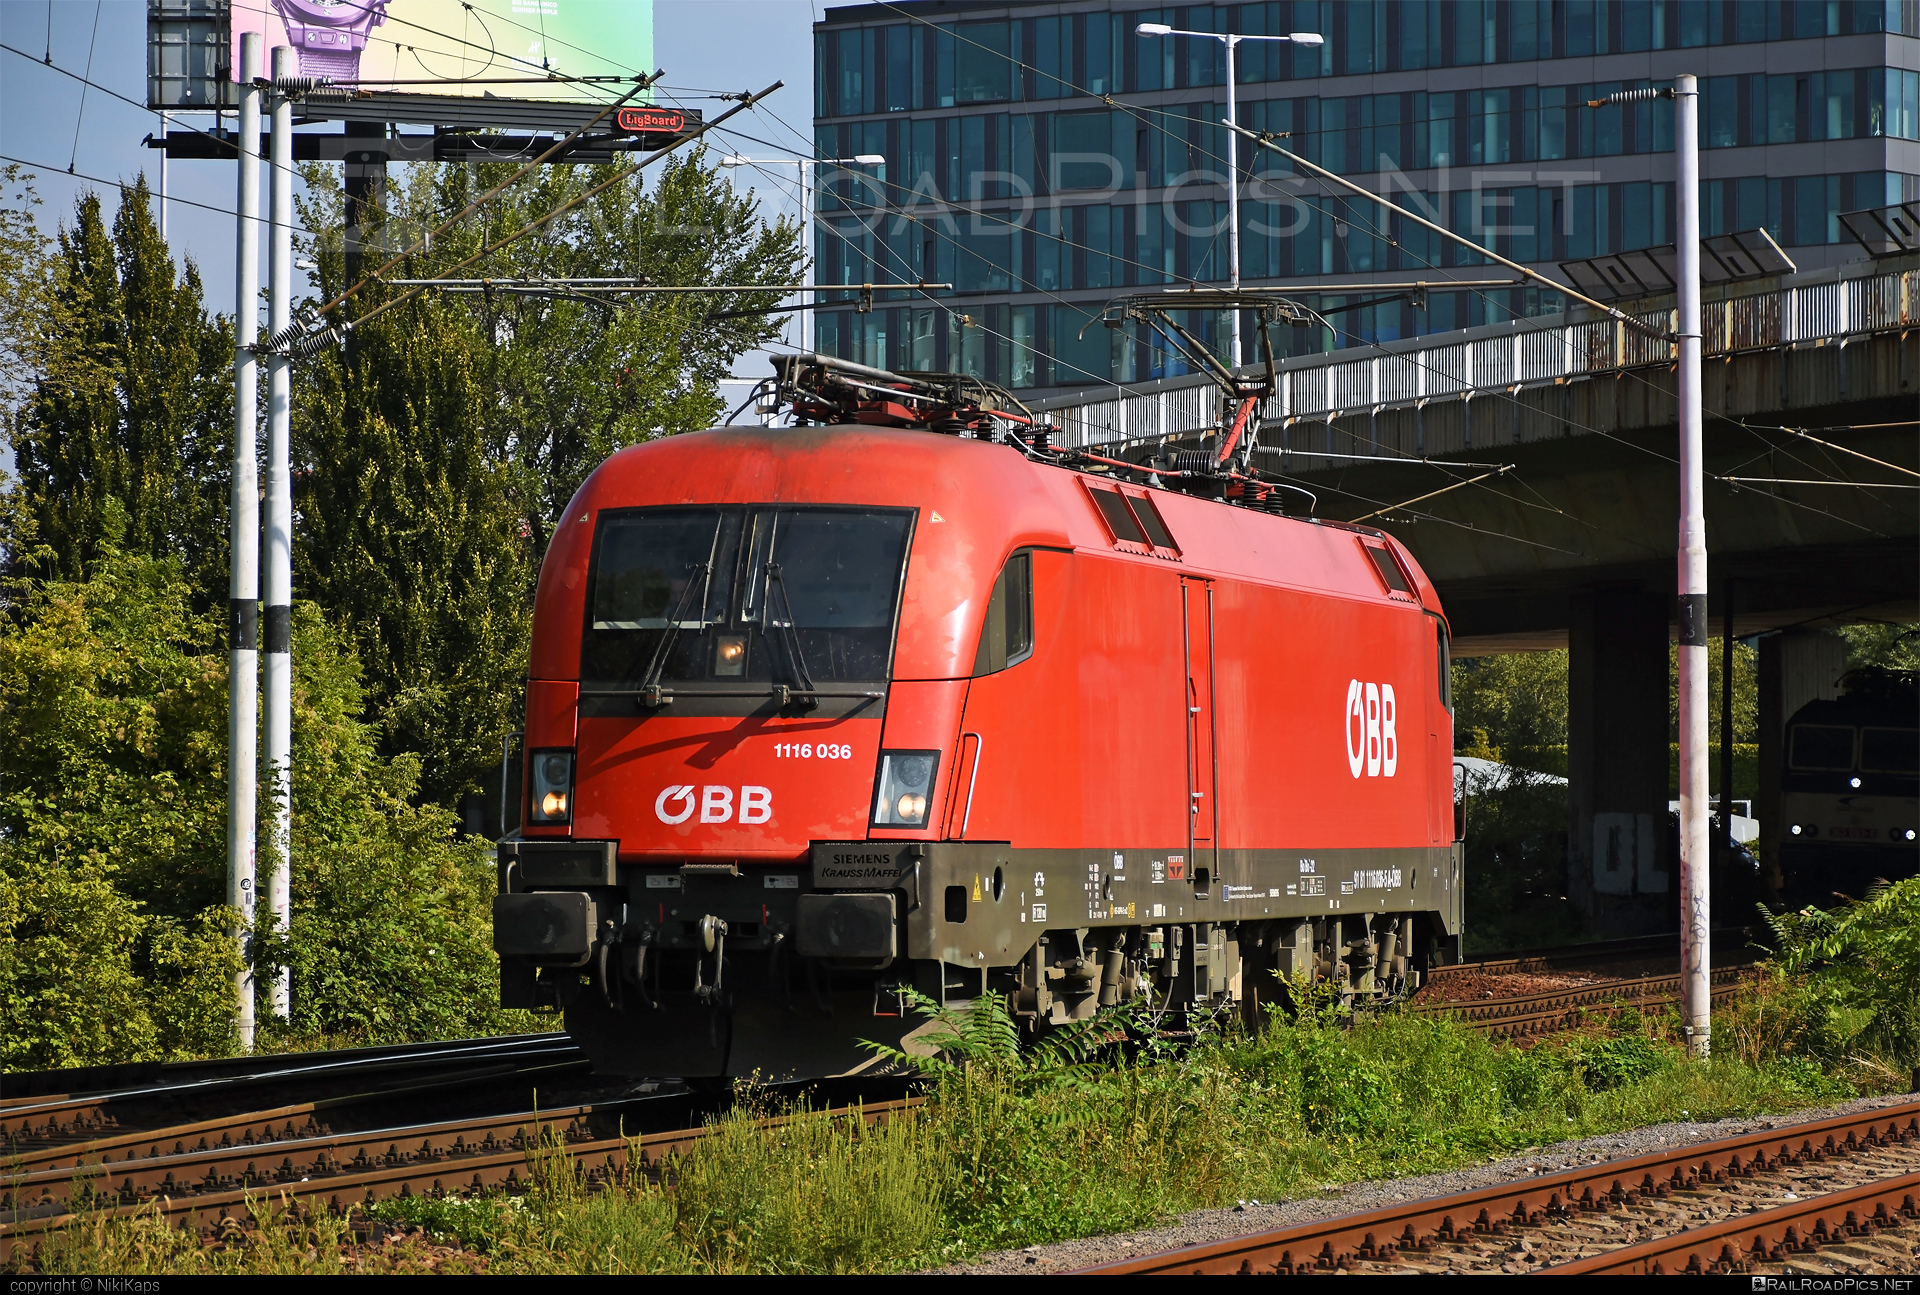 Siemens ES 64 U2 - 1116 036 operated by Rail Cargo Austria AG #es64 #es64u2 #eurosprinter #obb #osterreichischebundesbahnen #rcw #siemens #siemenses64 #siemenses64u2 #siemenstaurus #taurus #tauruslocomotive